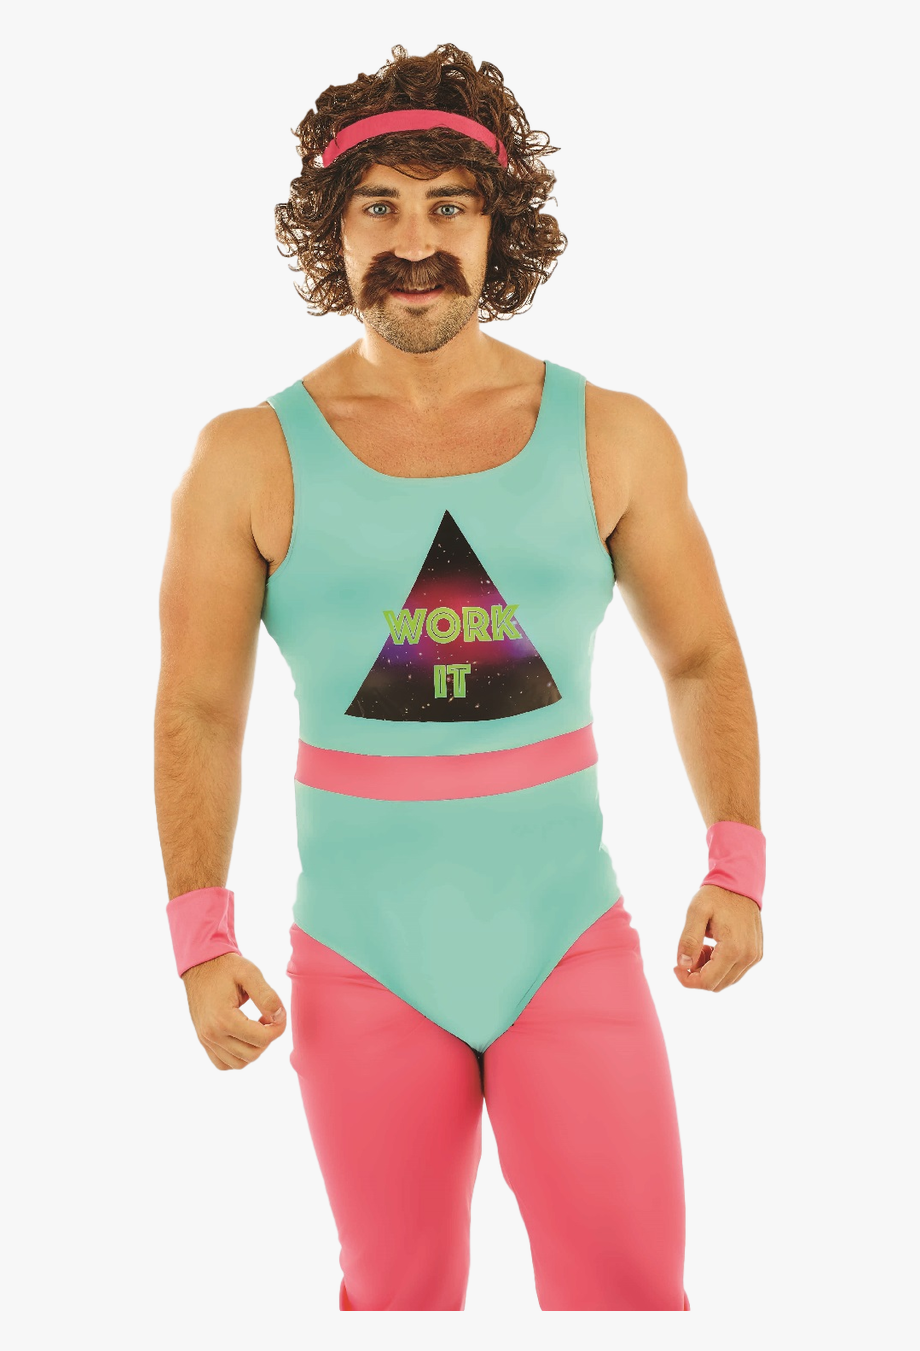 Розовое трико. Костюм для аэробики 80-х. Фитнес тренер 80-х. Аэробика 80-х мужчины. Смешные костюмы.